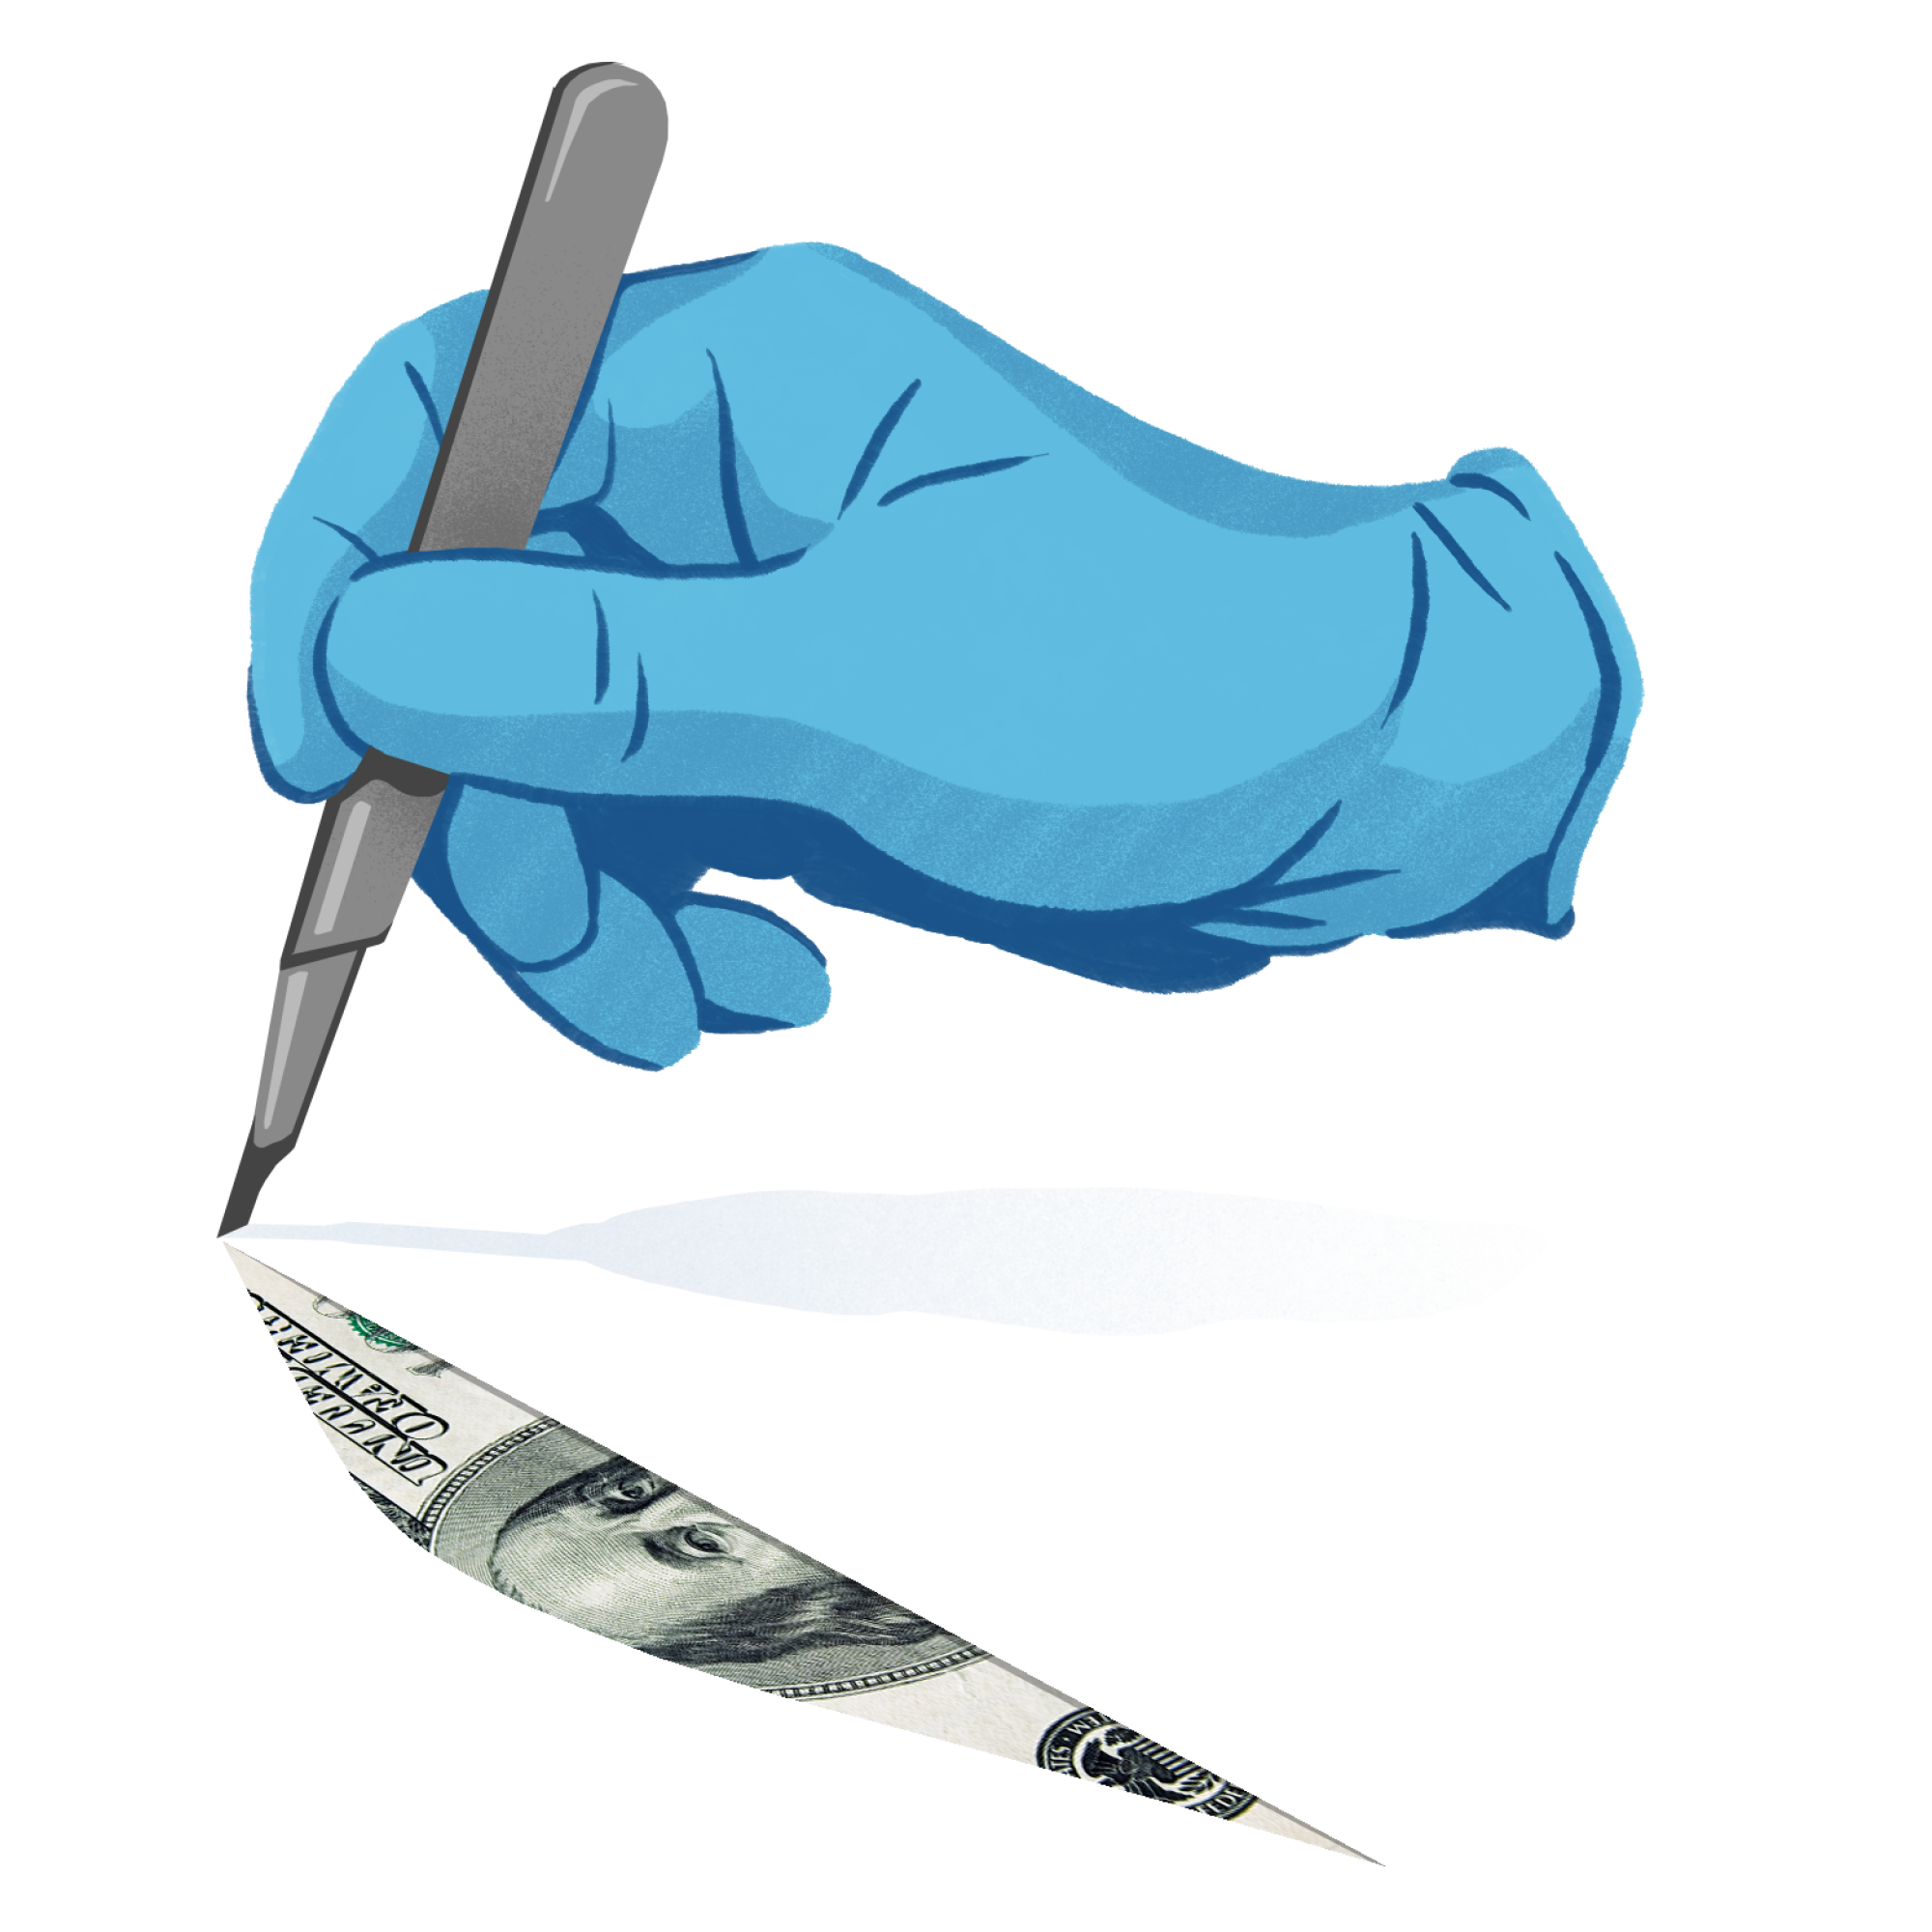 L'illustration conceptuelle montre le scalpel du chirurgien révélant de l'argent